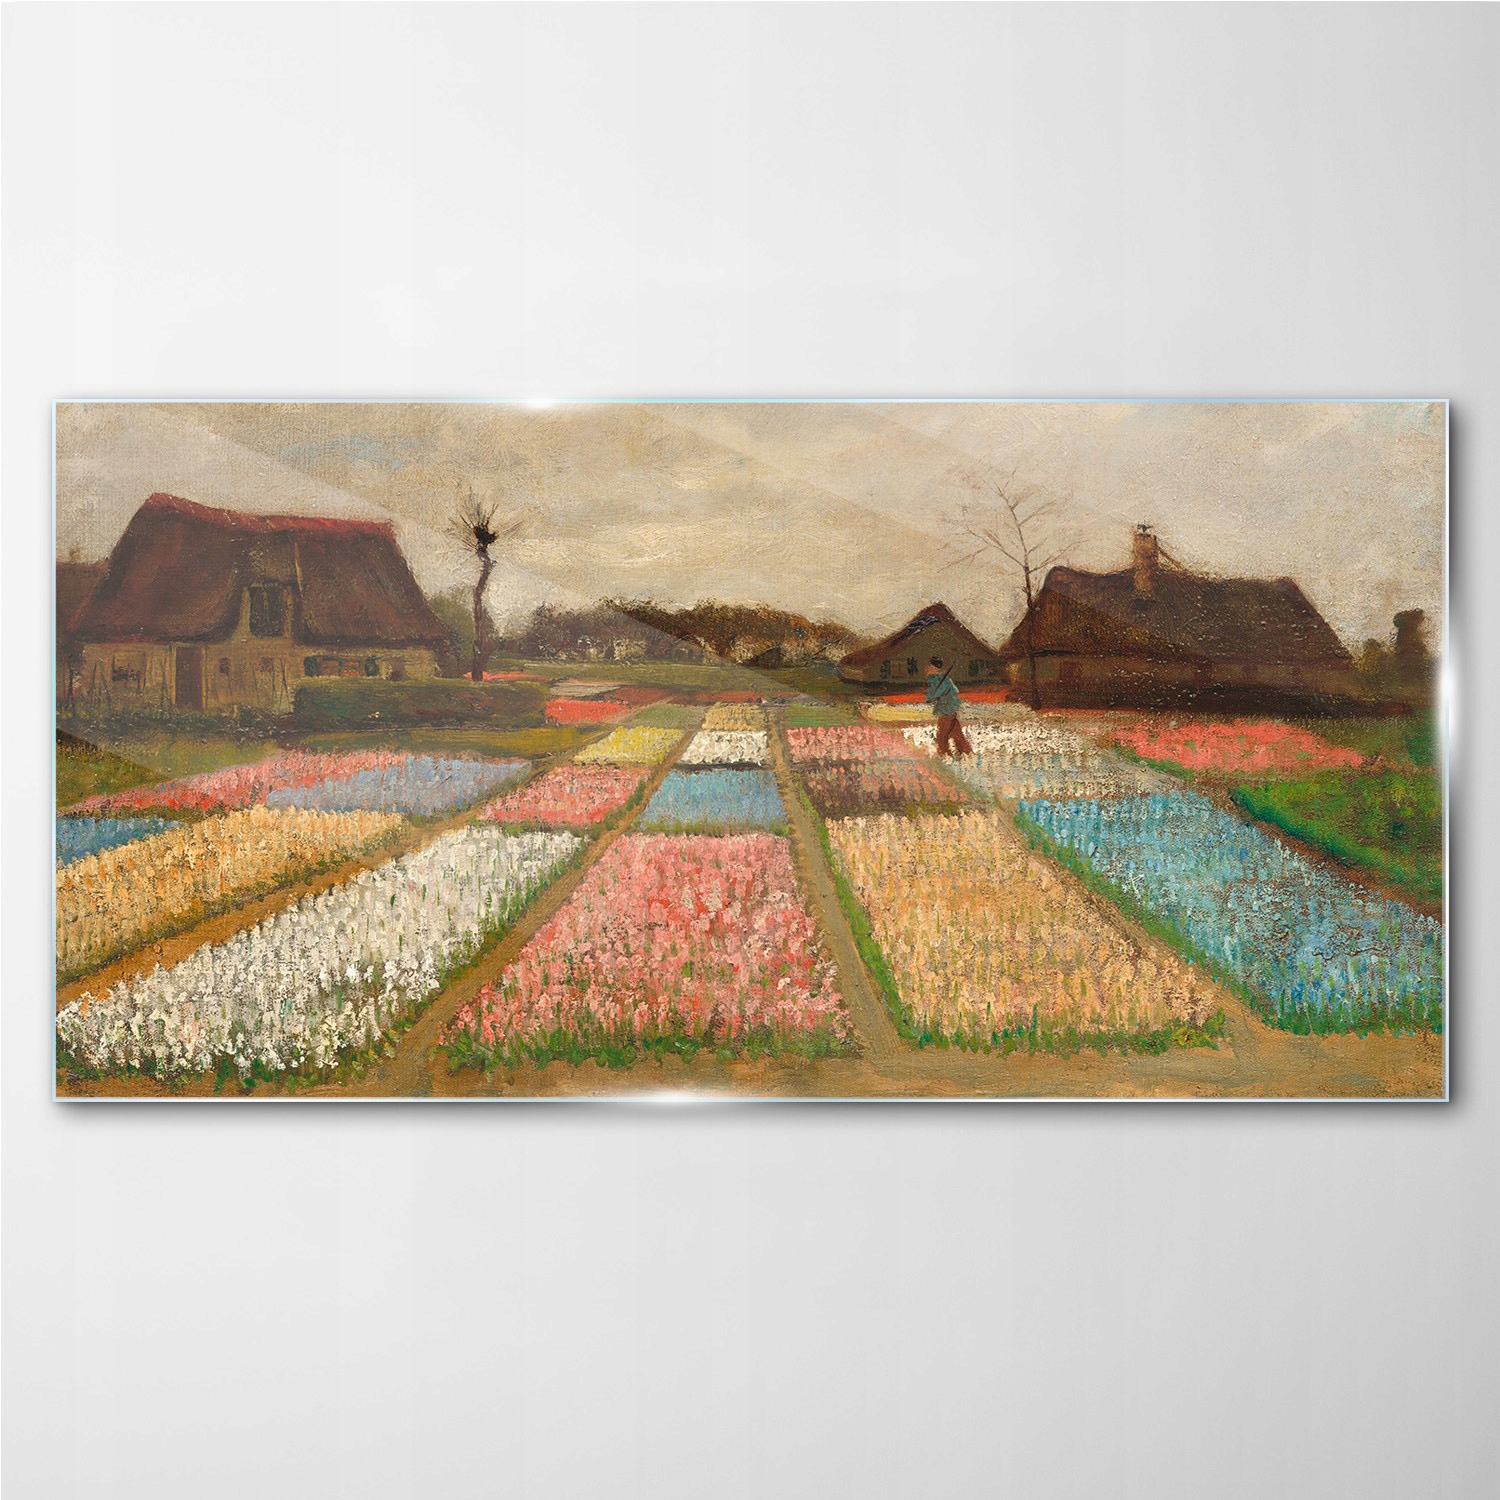 

Foto-obraz szklany Bulb fields Van Gogh 140x70 cm